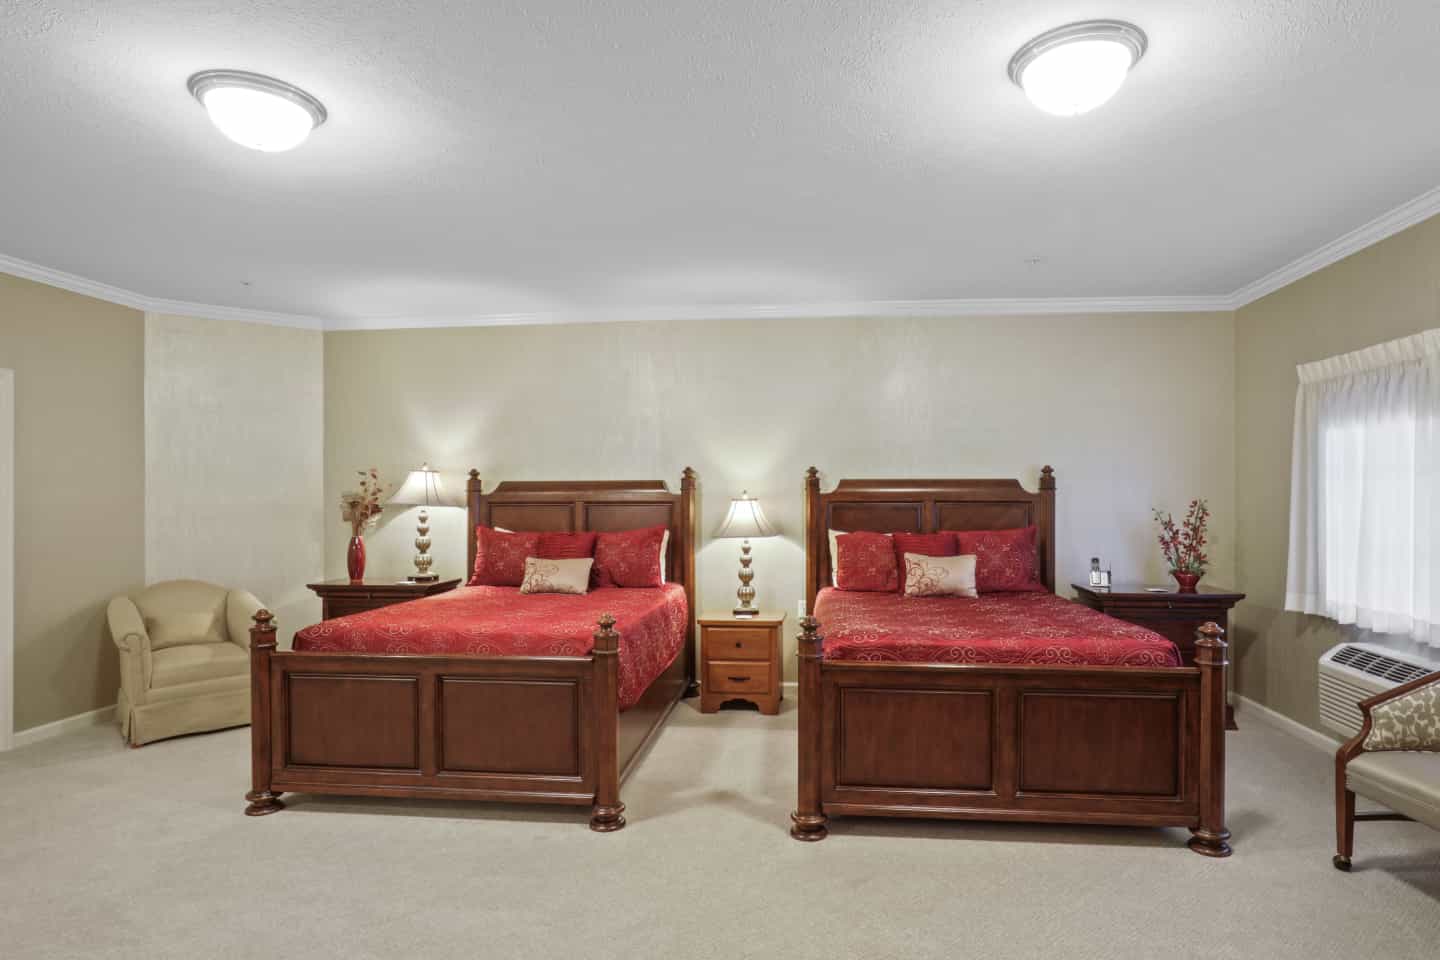 Guest Room - Bedroom